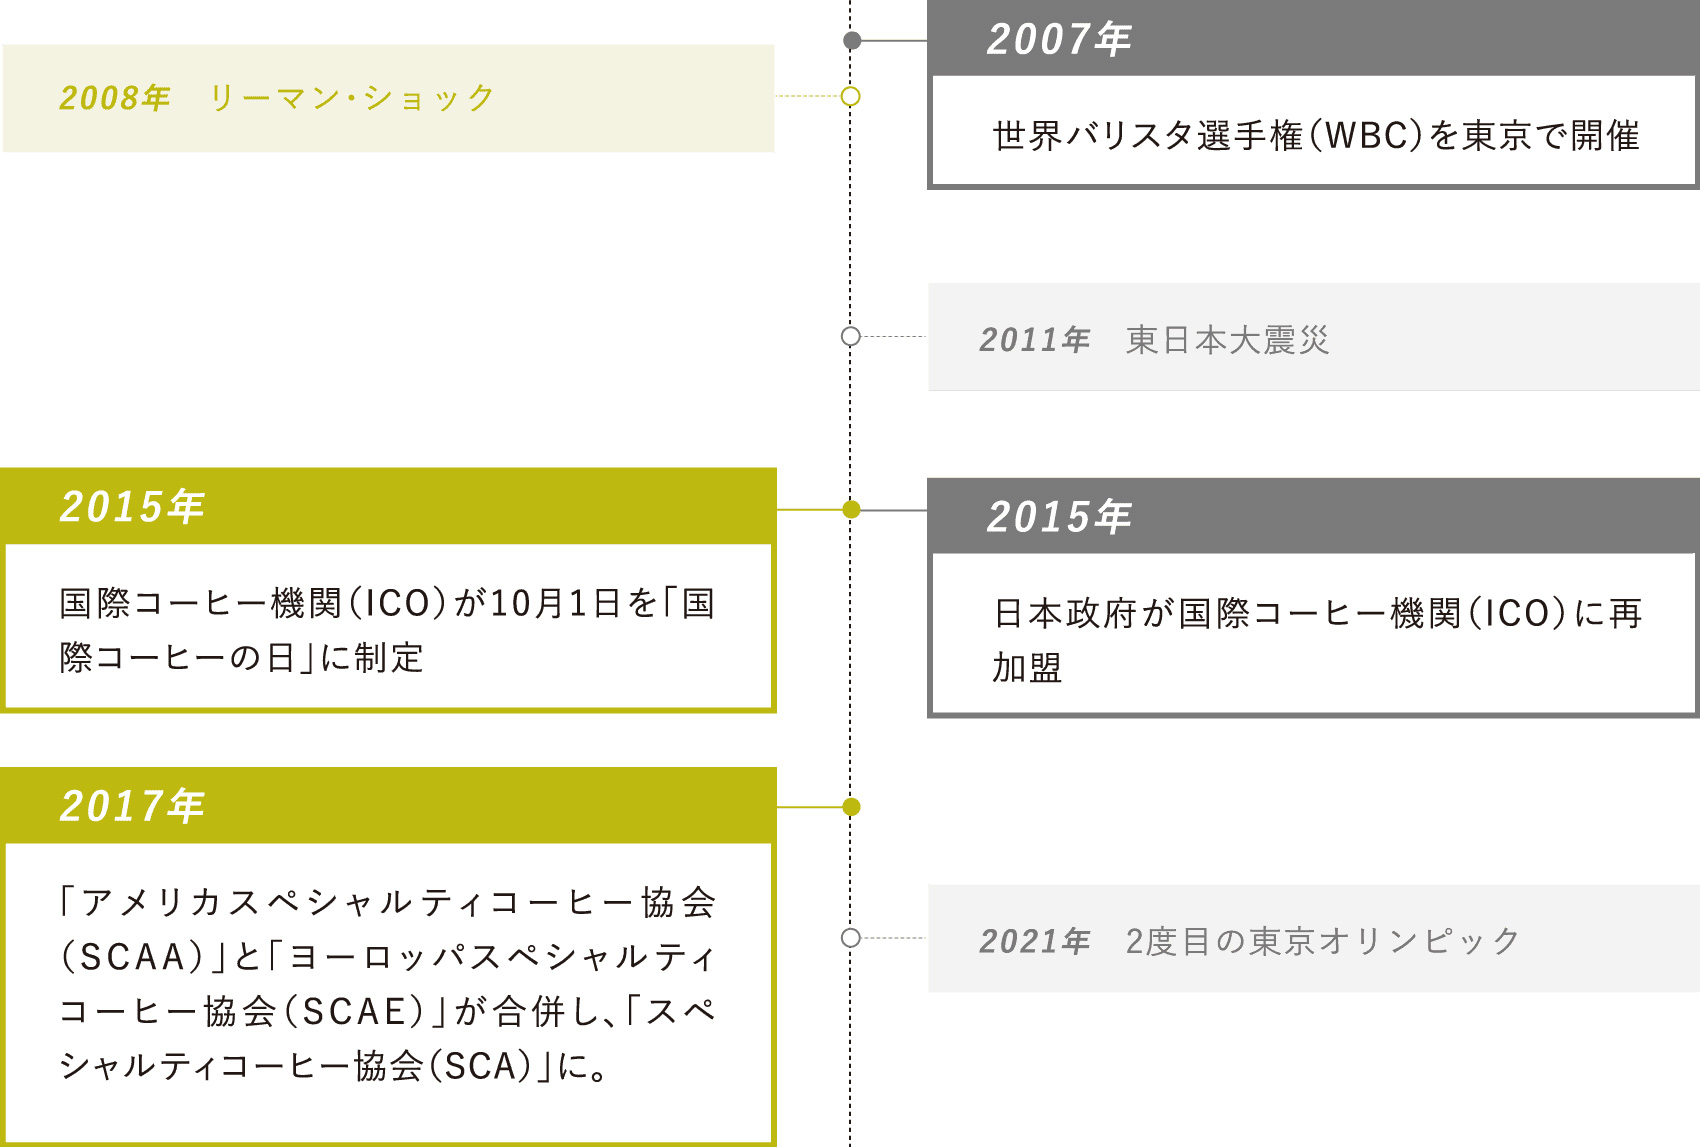 2007年：世界バリスタ選手権（WBC）を東京で開催・2015年：国際コーヒー機関（ICO）が10月1日を「国際コーヒーの日」に制定・2015年：日本政府が国際コーヒー機関（ICO）に再加盟・2017年：「アメリカスペシャルティコーヒー協会（SCAA）」と「ヨーロッパスペシャルティコーヒー協会（SCAE）」が合併し、「スペシャルティコーヒー協会（SCA）」に。